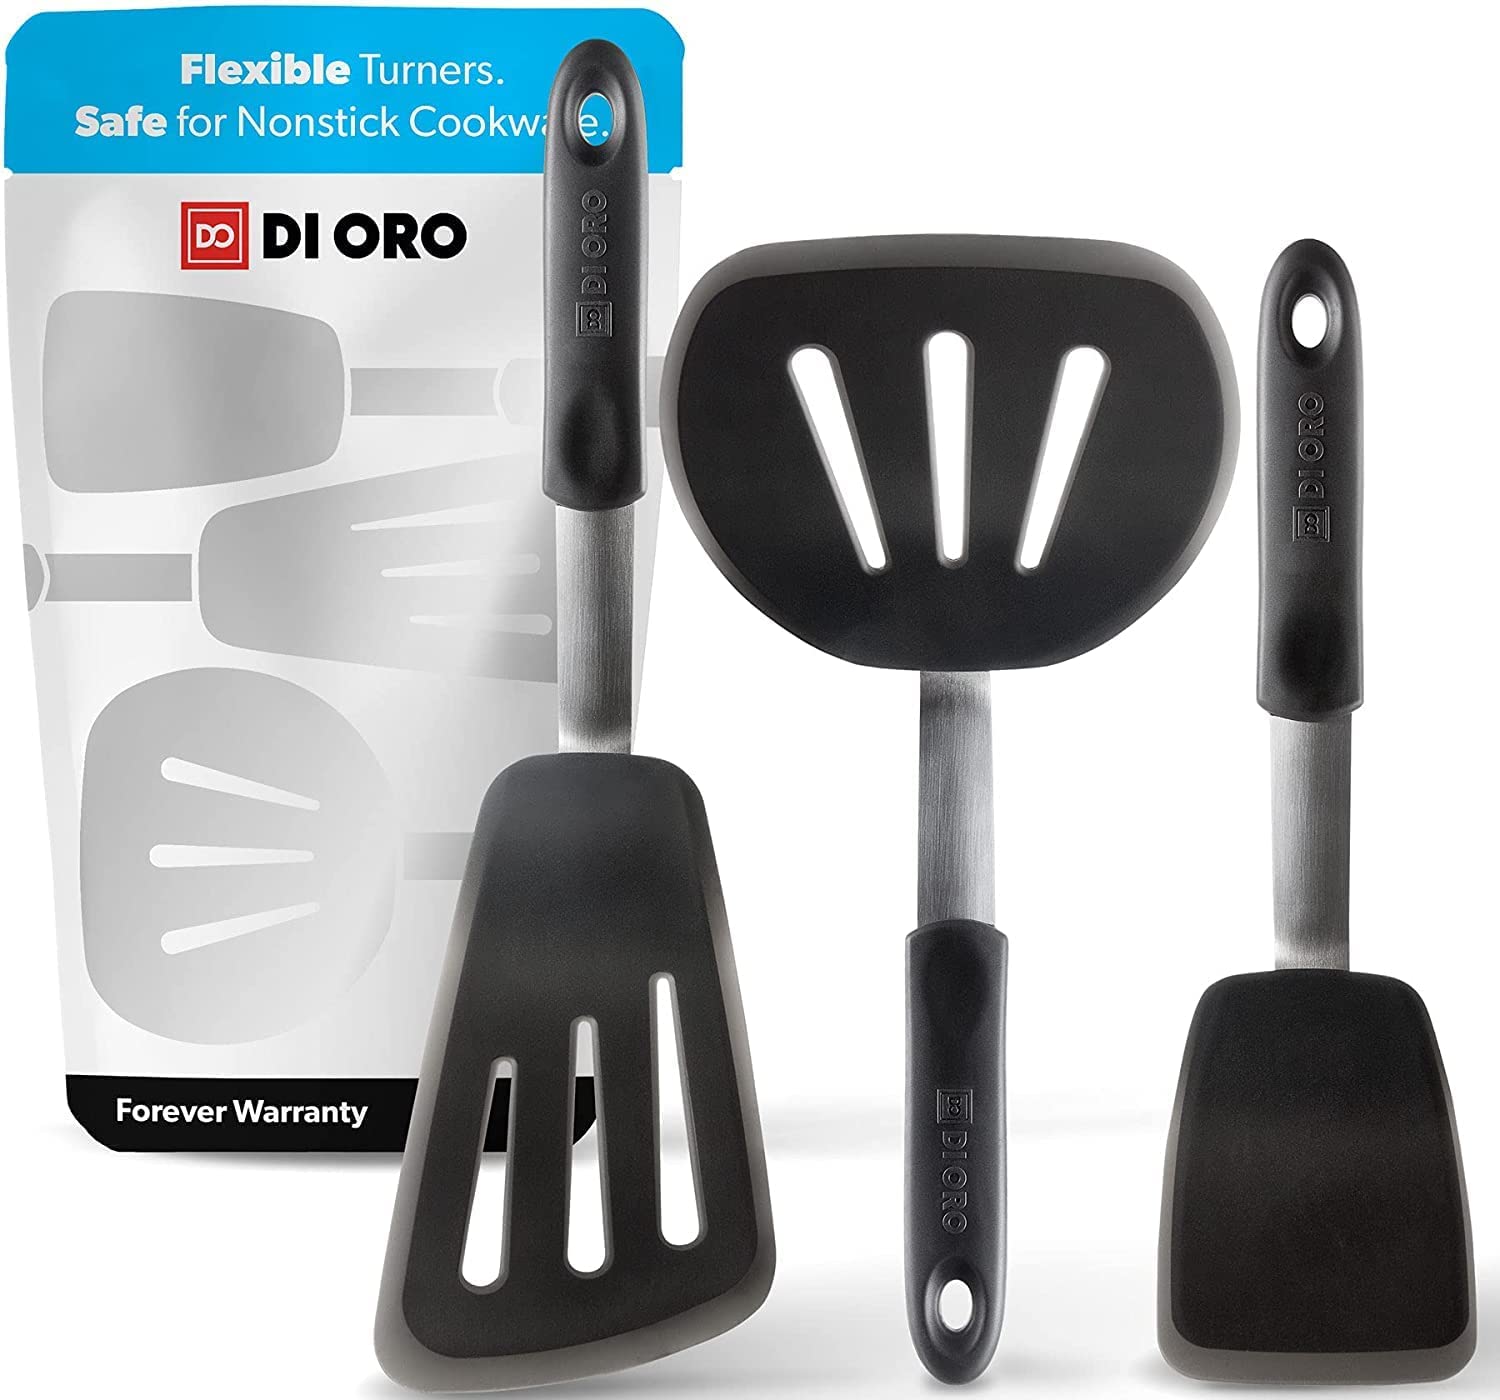 https://www.dontwasteyourmoney.com/wp-content/uploads/2021/12/di-oro-bpa-free-non-slip-spatula-3-piece-spatula.jpg